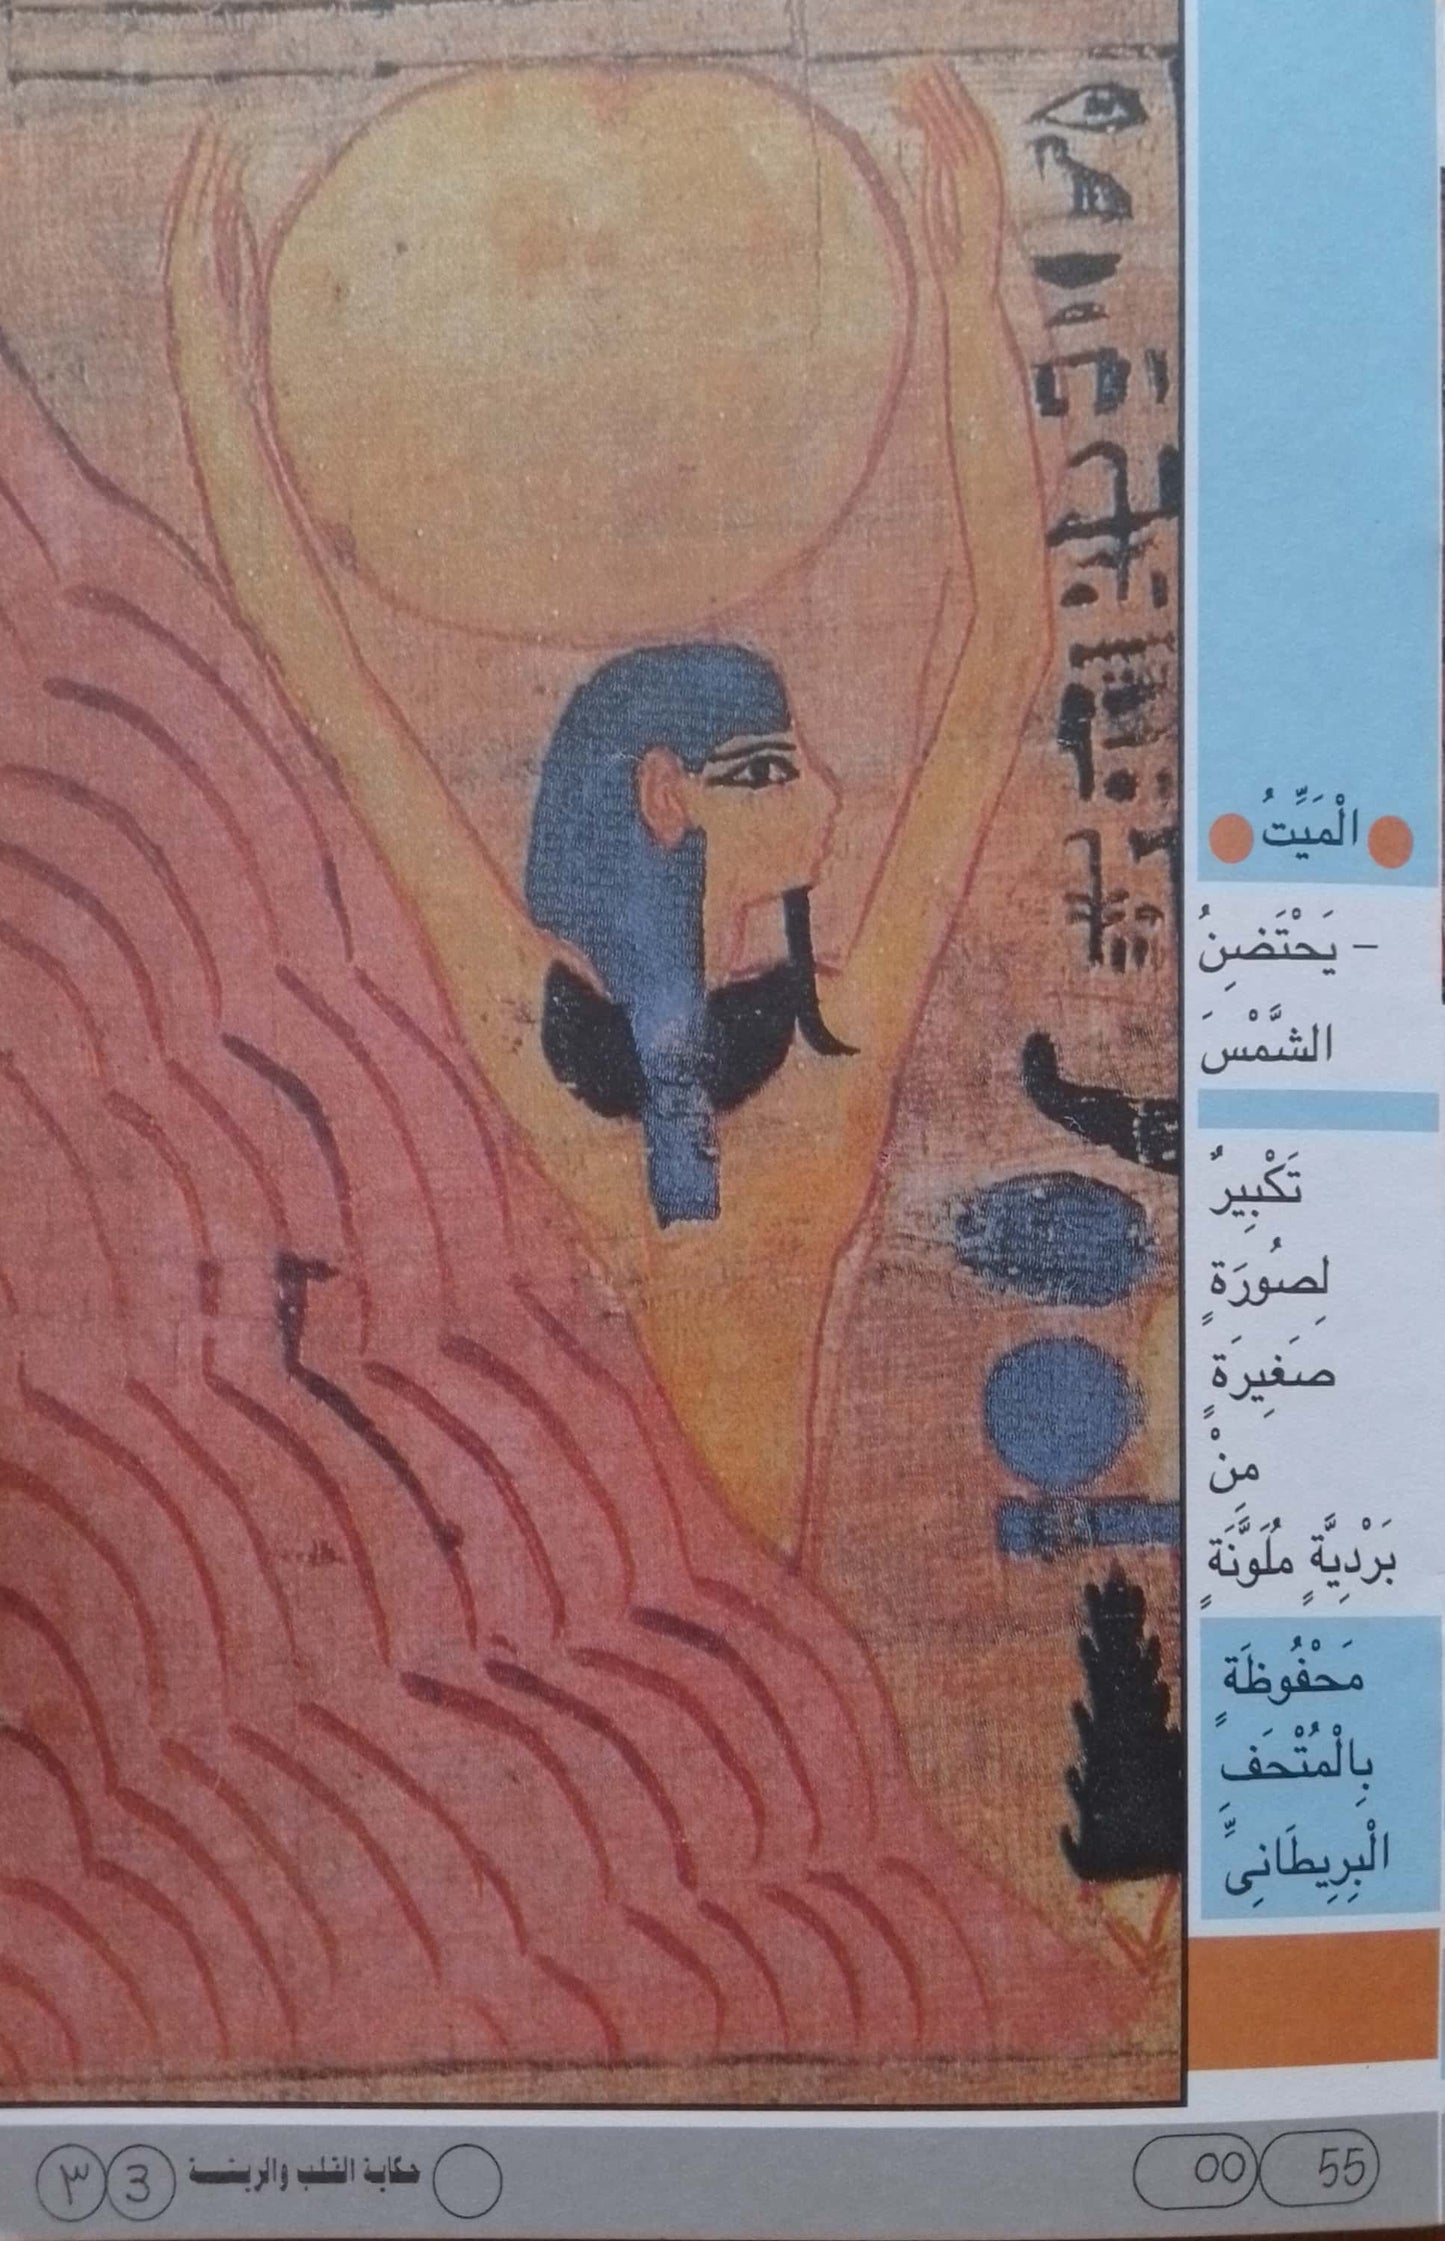 حكاية القلب والريشة - سلسلة موسوعة حضارة مصر القديمة